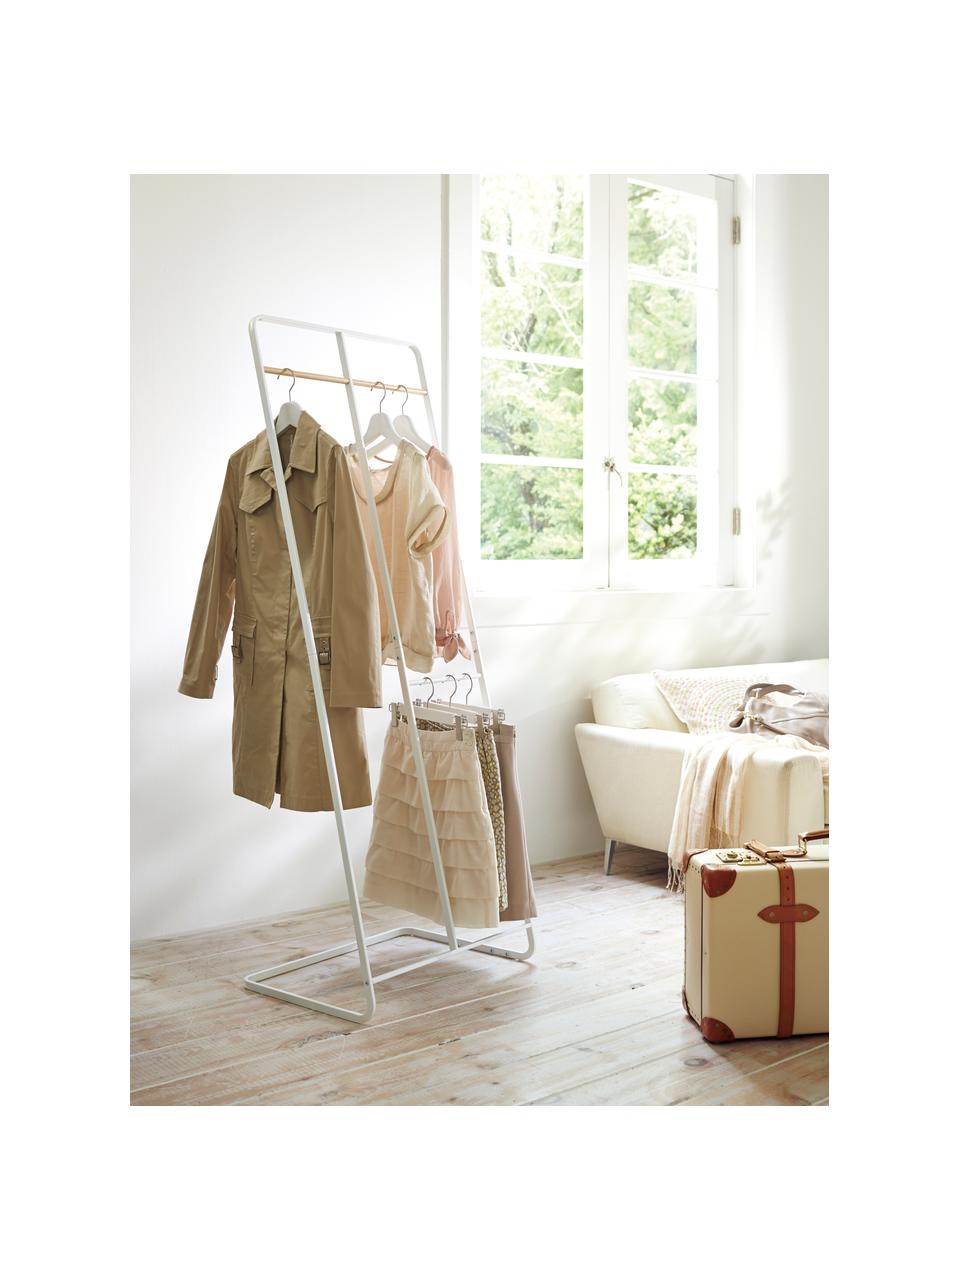 Metalen kledingrek Towi in wit, Frame: gepoedercoat metaal, Stang: hout, Wit, 61 x 163 cm